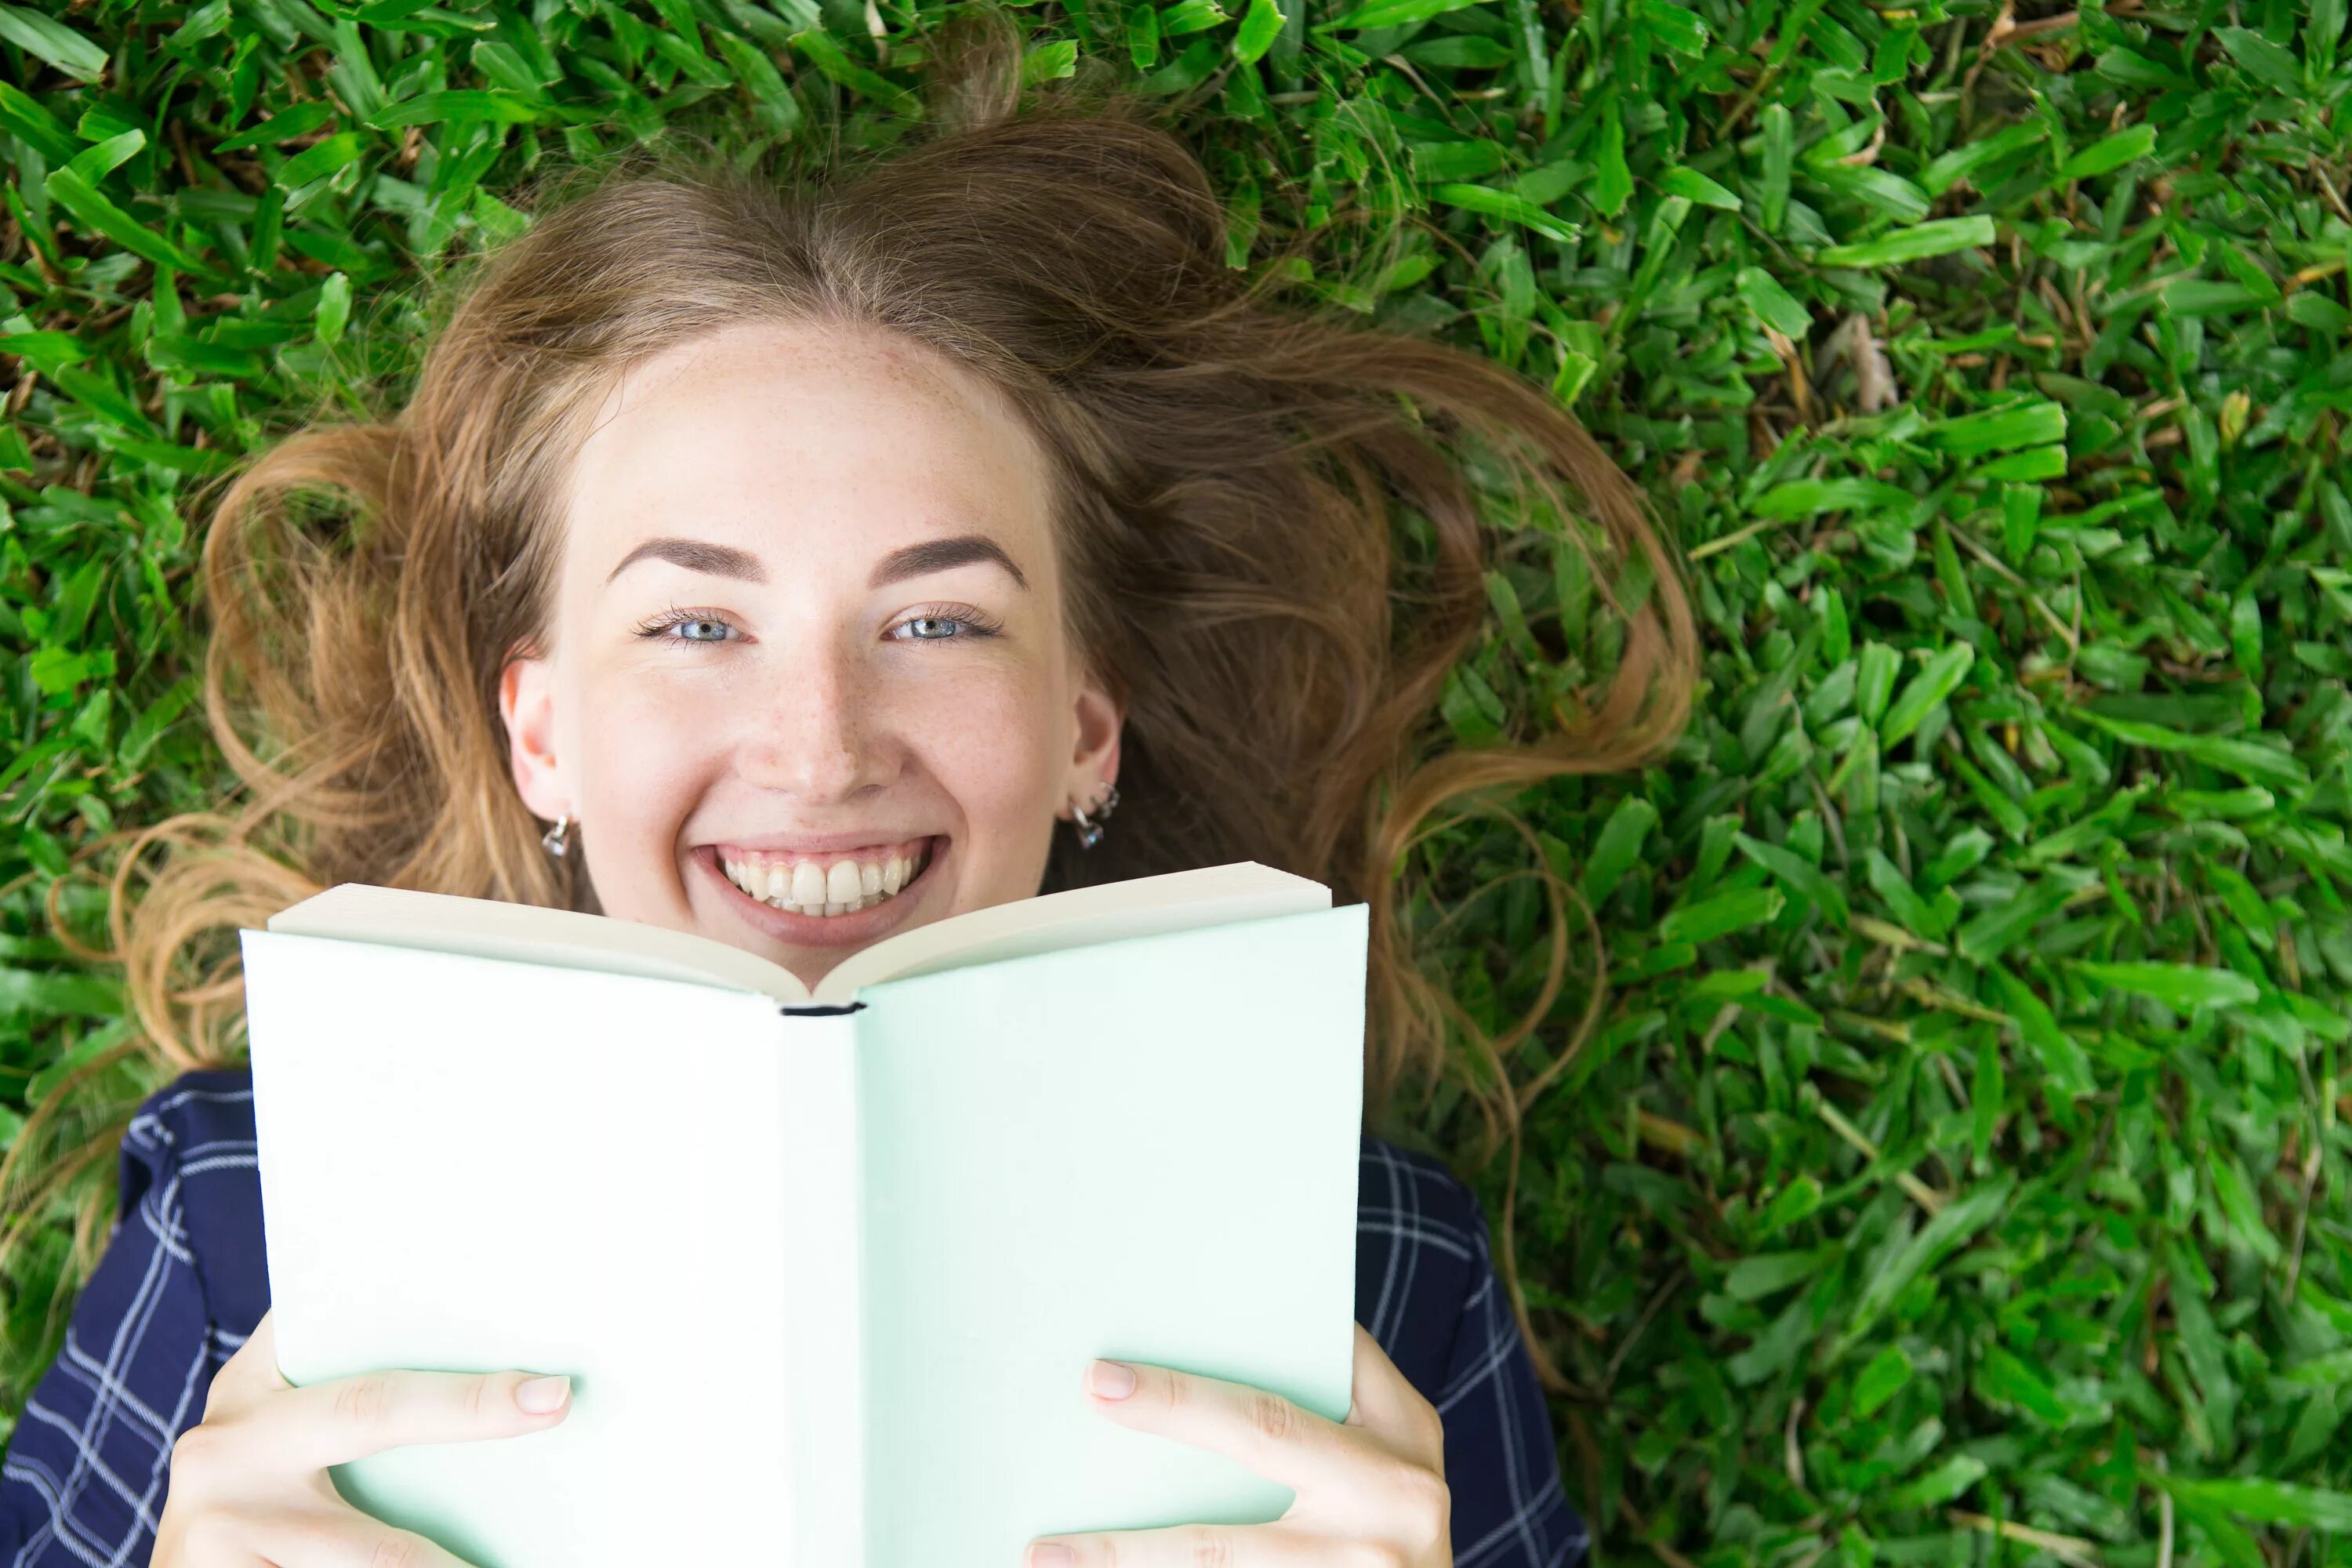 Девушка с книгой улыбается. Девочка с книжкой на траве. Девушка на траве с книгой. Девушка бумажная книга лайк.